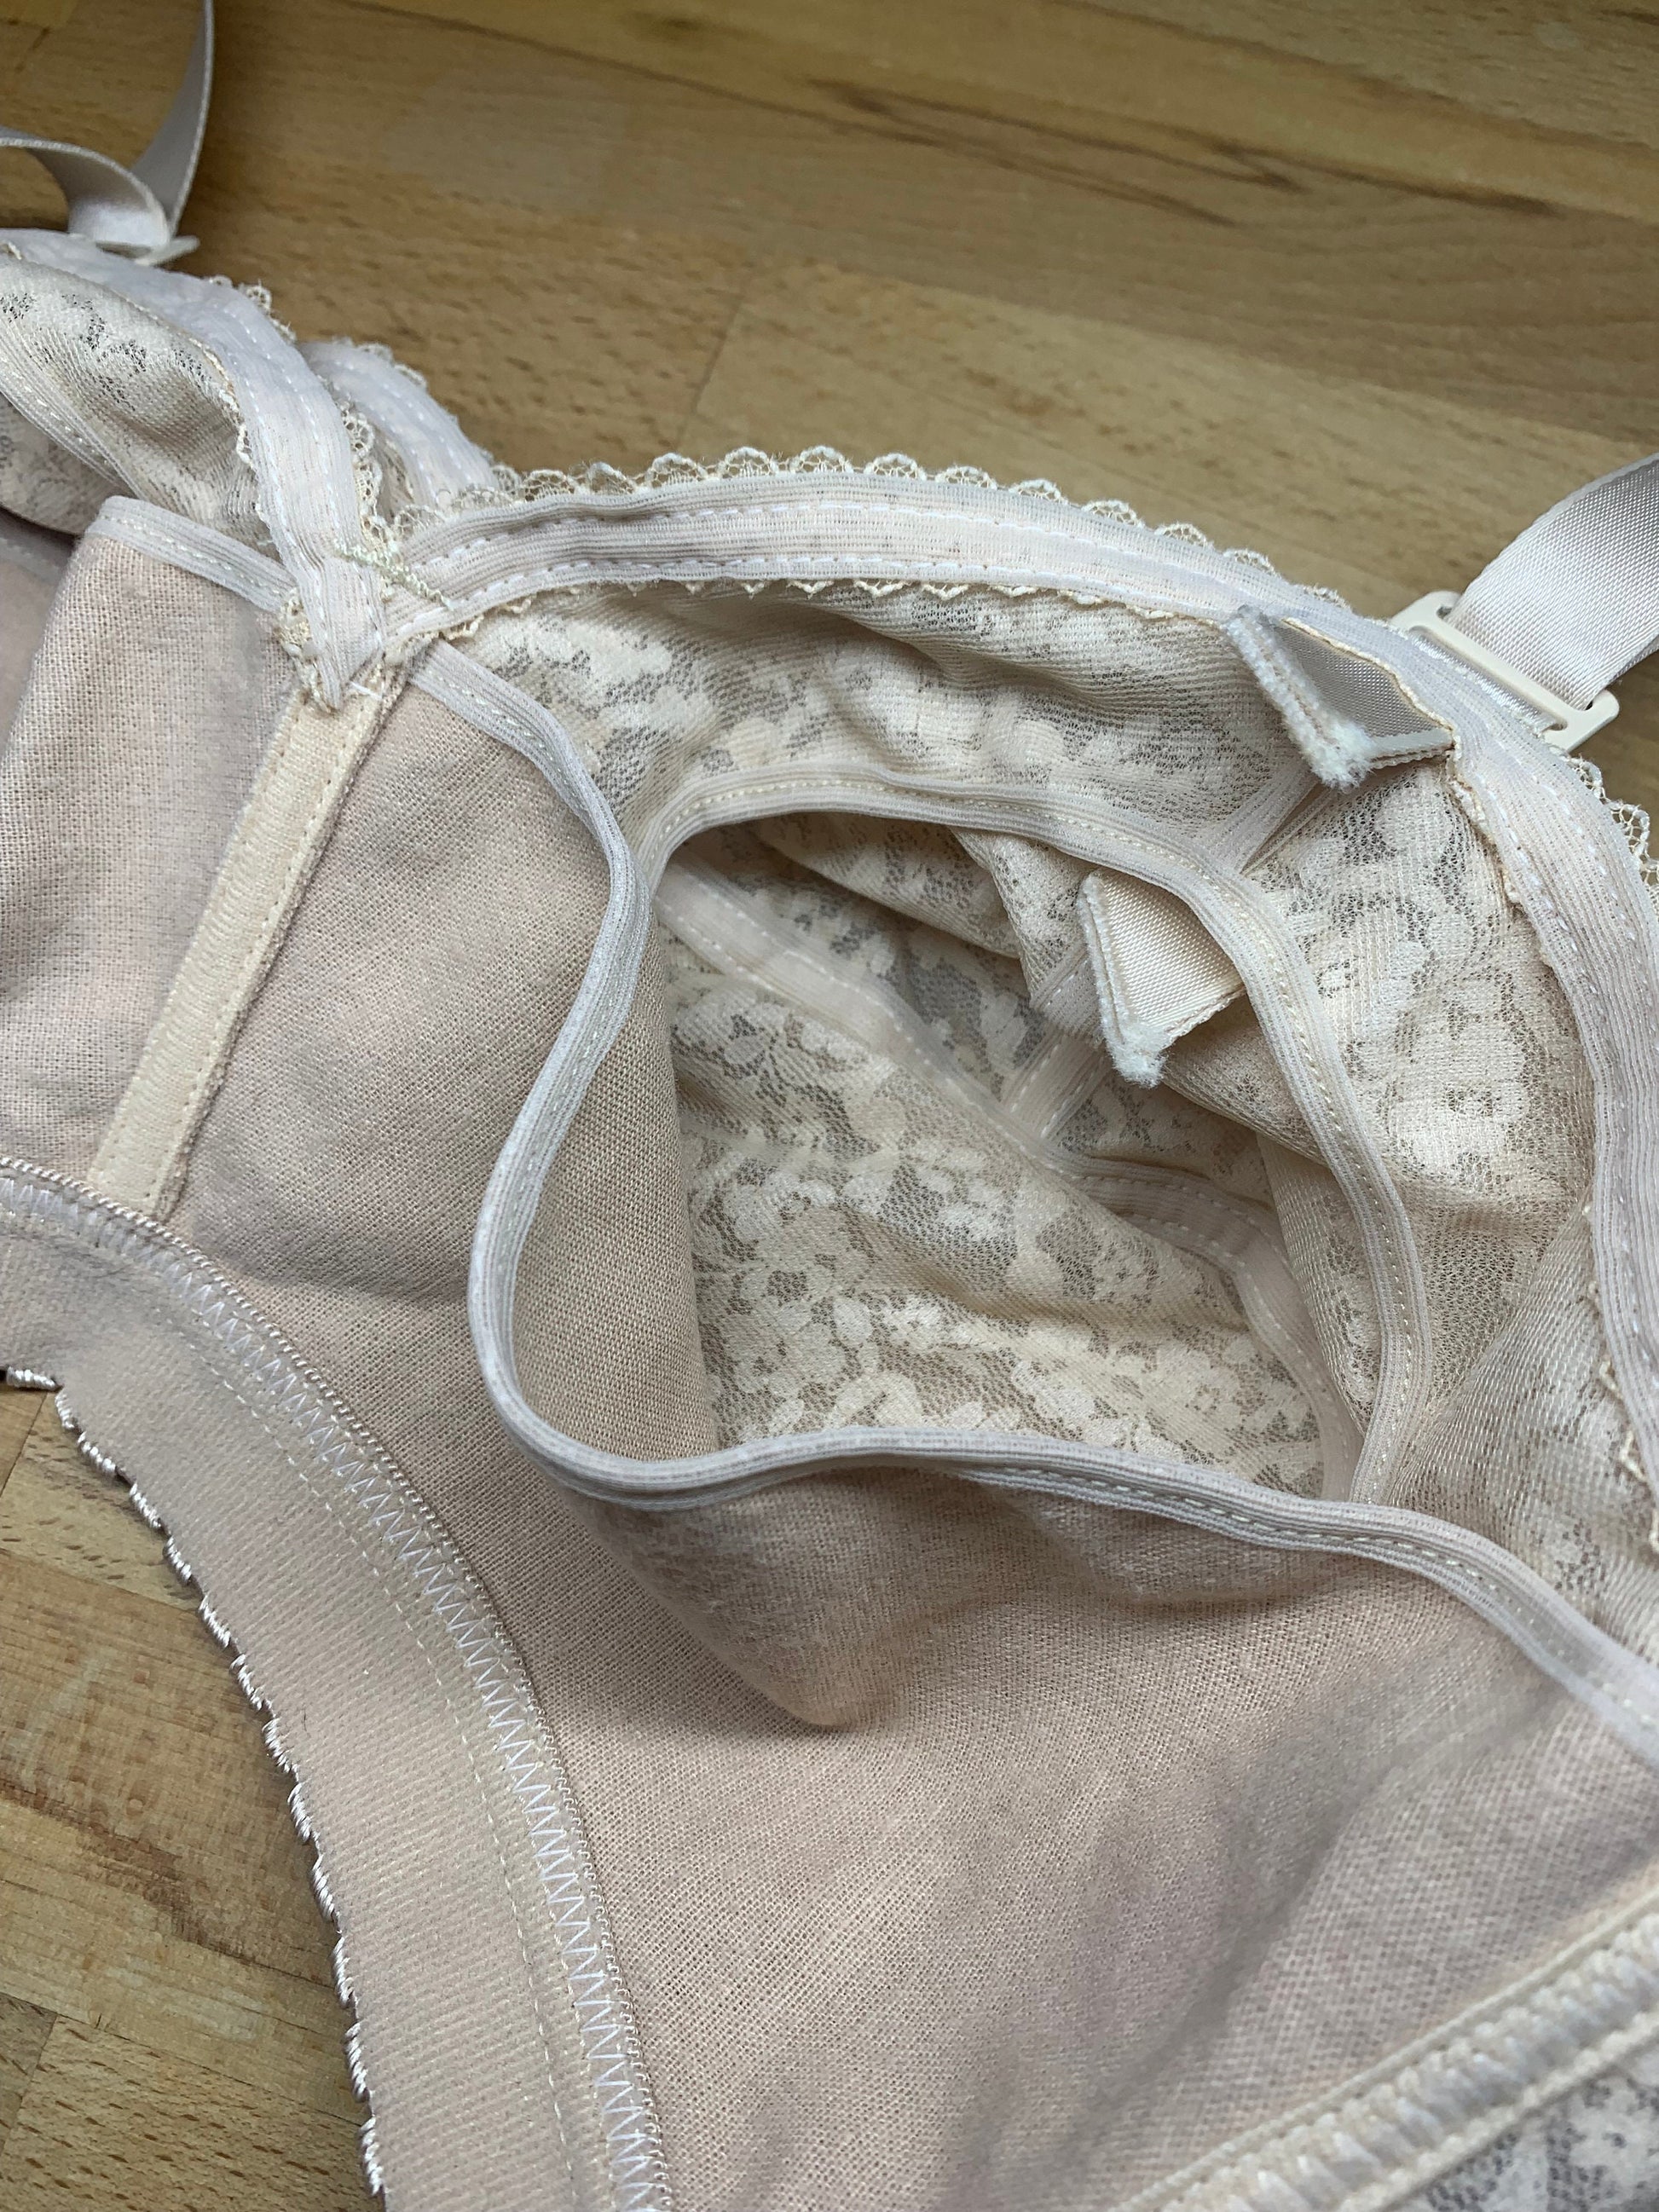 Cotton Nursing Ladies Inner Wear Bra, Plain at Rs 55/piece in